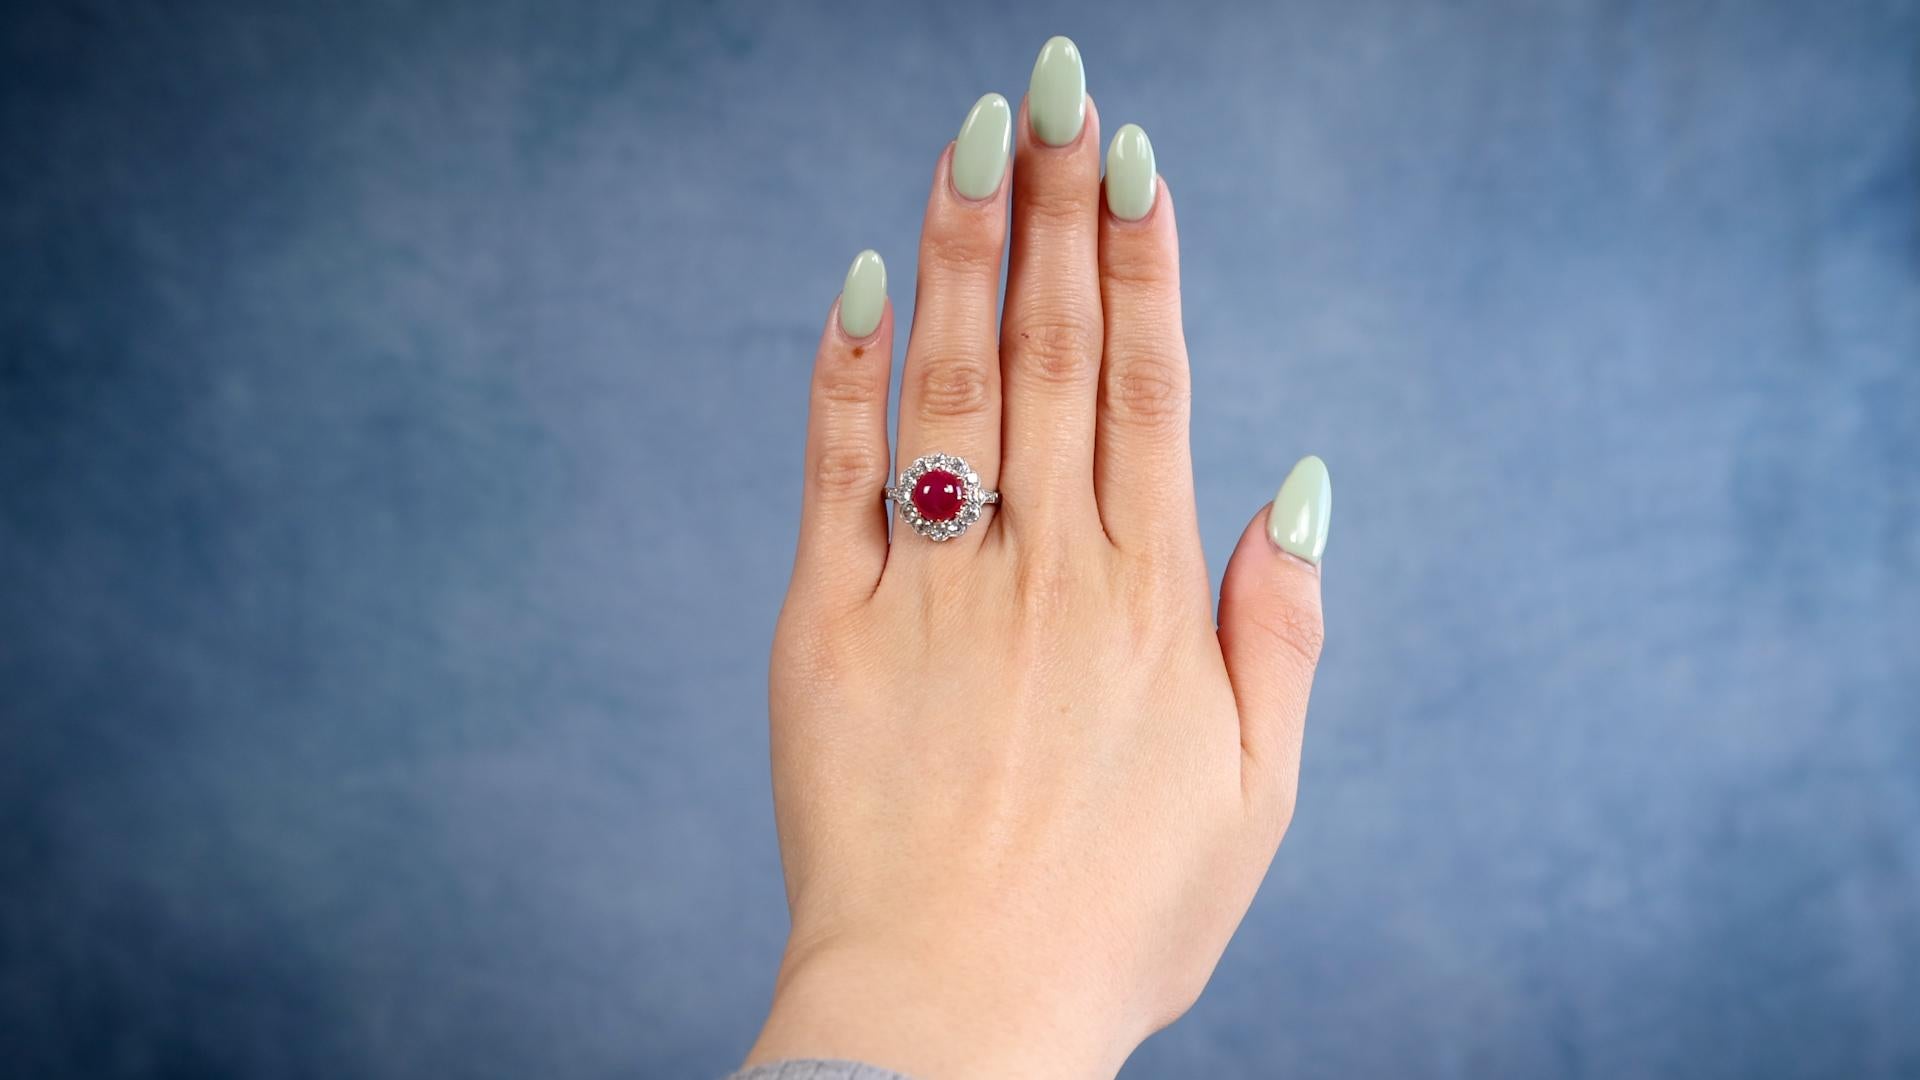 Eine Art Deco inspiriert Rubin Diamant Platin 14k Gelbgold Ring. Mit einem Rubin im Cabochon-Schliff von 3,79 Karat. Akzentuiert durch 18 Diamanten im alten europäischen Schliff mit einem Gesamtgewicht von ca. 1,45 Karat, eingestuft in Farbe J-K,